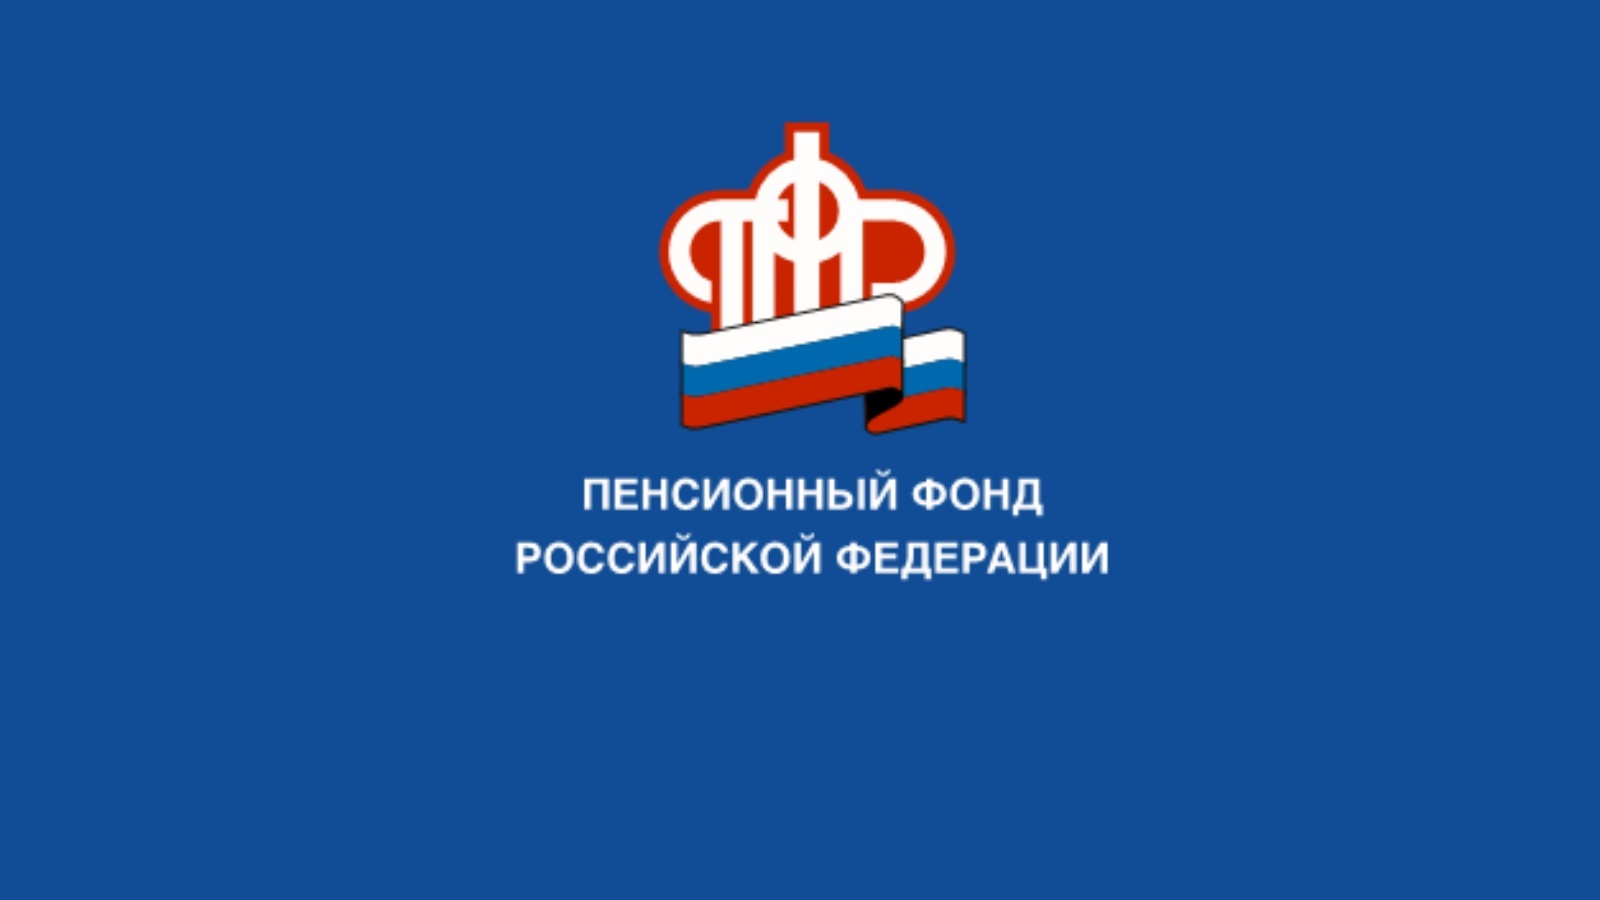 В 2023 году услуги ПФР и ФСС в Республике Башкортостан будут  оказываться в единых офисах клиентского обслуживания